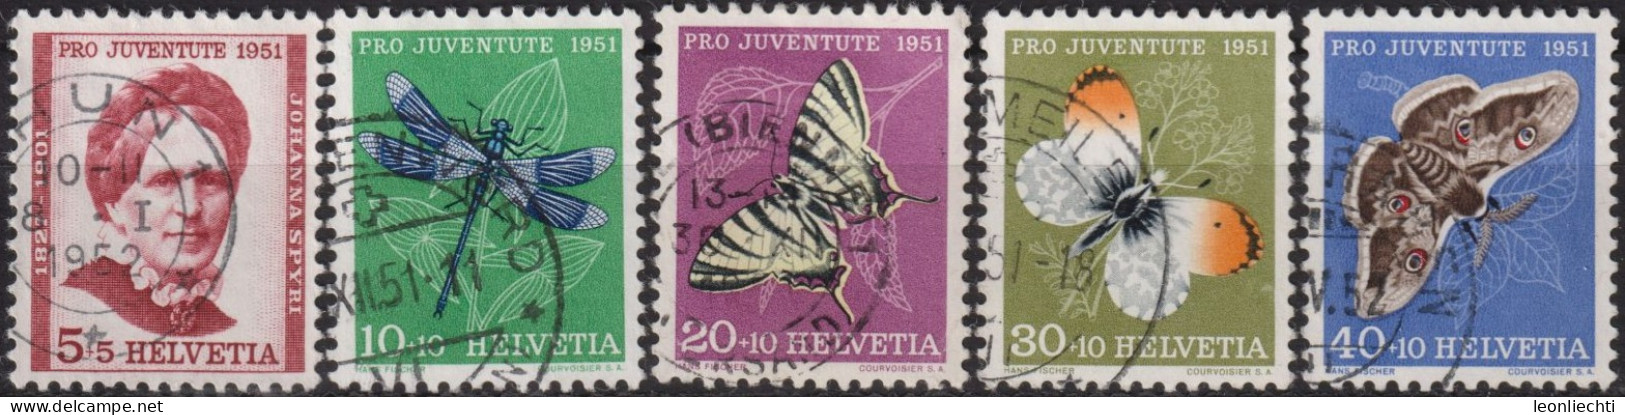 1951 Schweiz Pro Juventute ° Zum:CH J138-J142,Yt:CH 512-516, Mi:CH 561-265, Insekten Und Johanna Spyri - Used Stamps